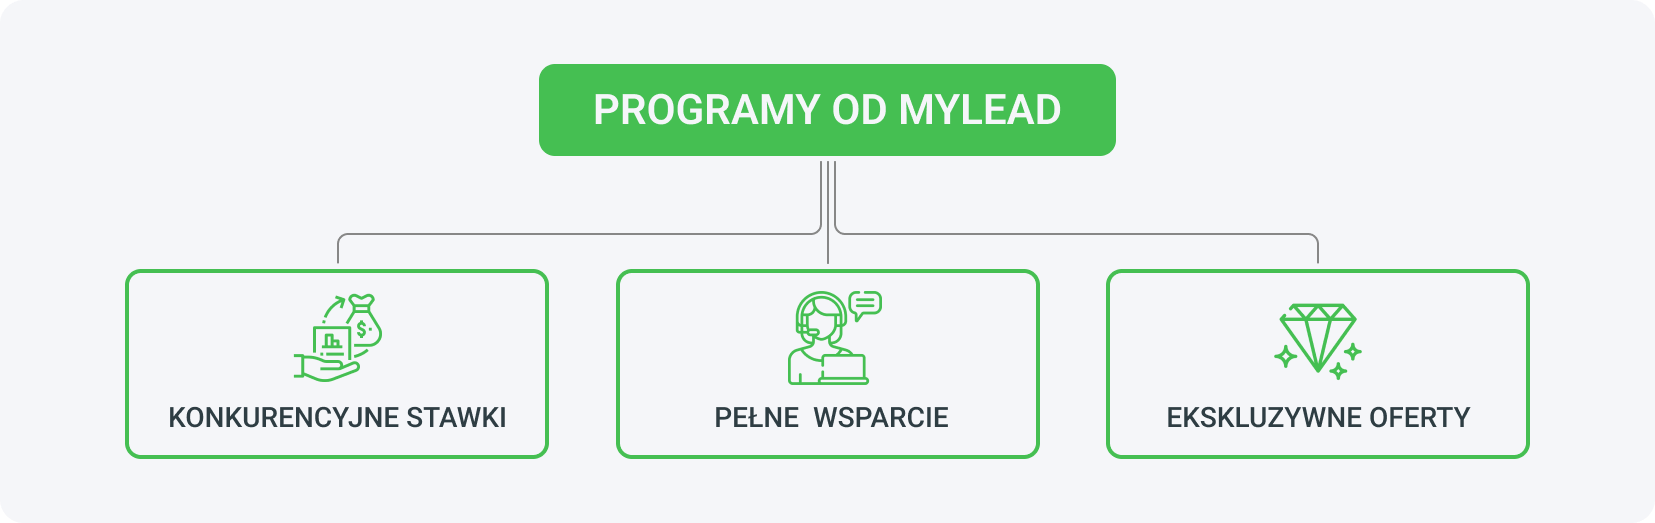 Alt: Najlepsze programy partnerskie 2023 od MyLead wyróżniają konkurencyjne stawki, pełne wsparcie i dostęp do darmowych narzędzi afiliacyjnych oraz ekskluzywne oferty.